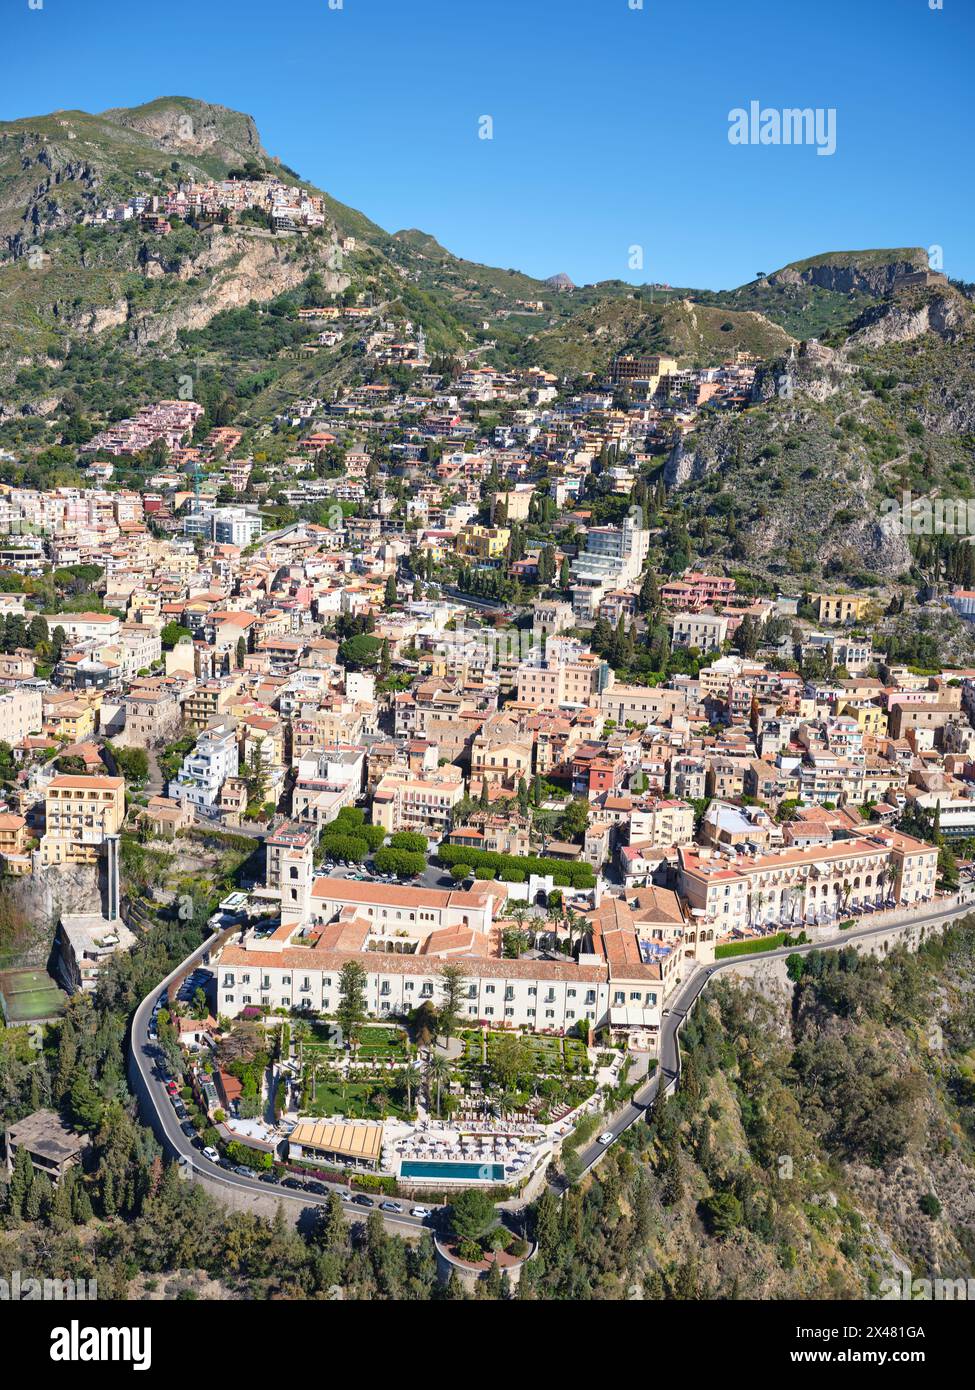 LUFTAUFNAHME. Die touristische Stadt Taormina und oben links das Dorf Castelmola auf einem Hügel. Metropolitanstadt Mesina, Sizilien, Italien. Stockfoto